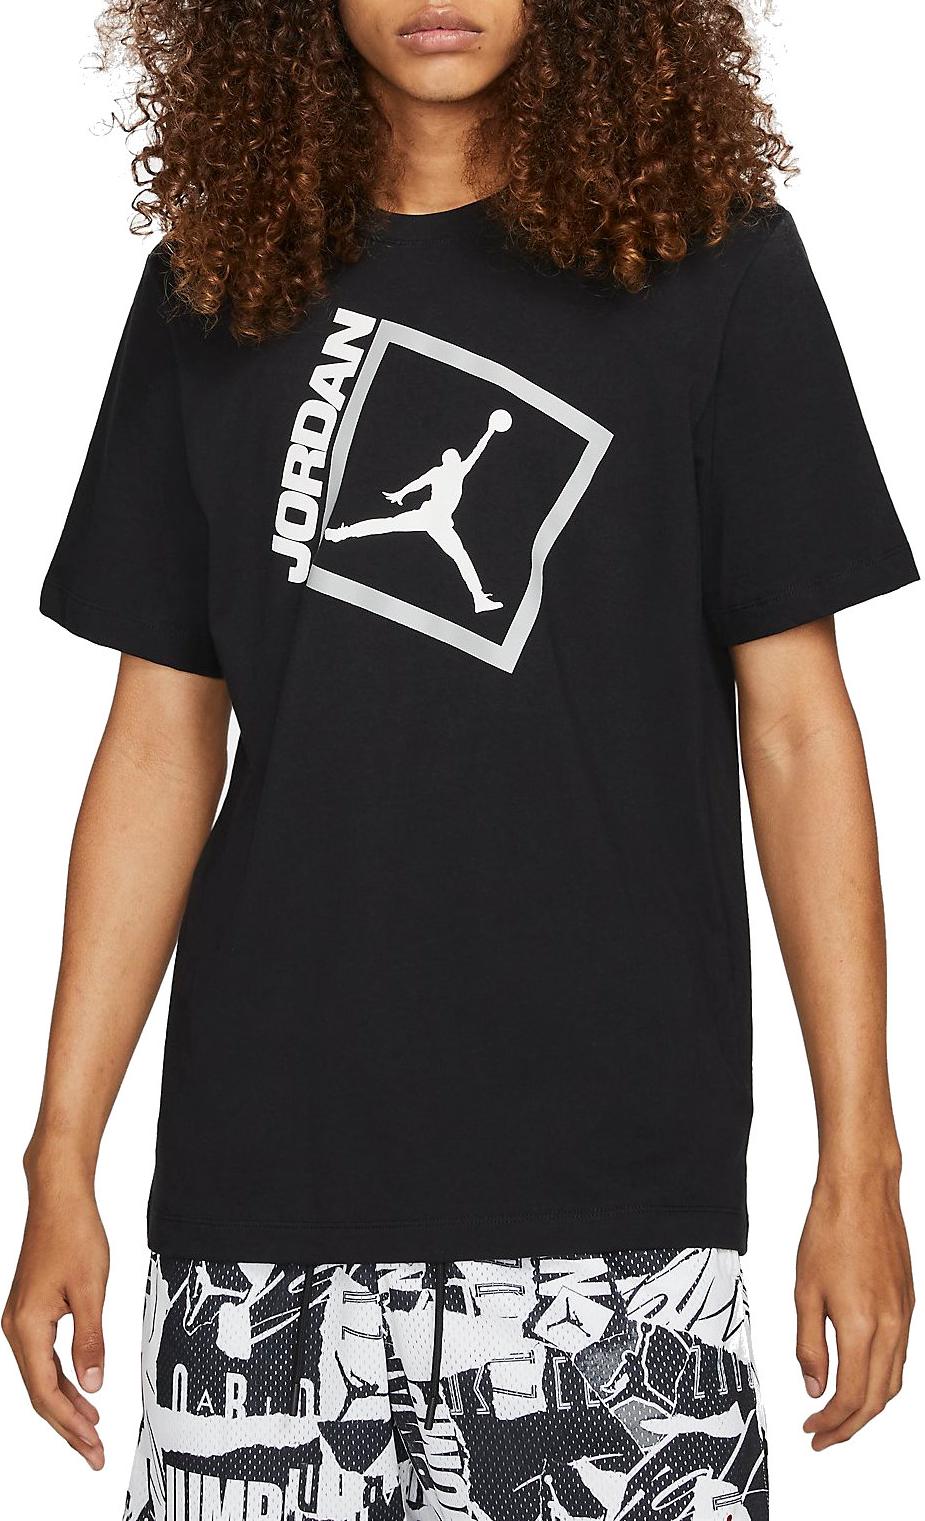 Jordan Jumpman Box Men s Short-Sleeve T-Shirt